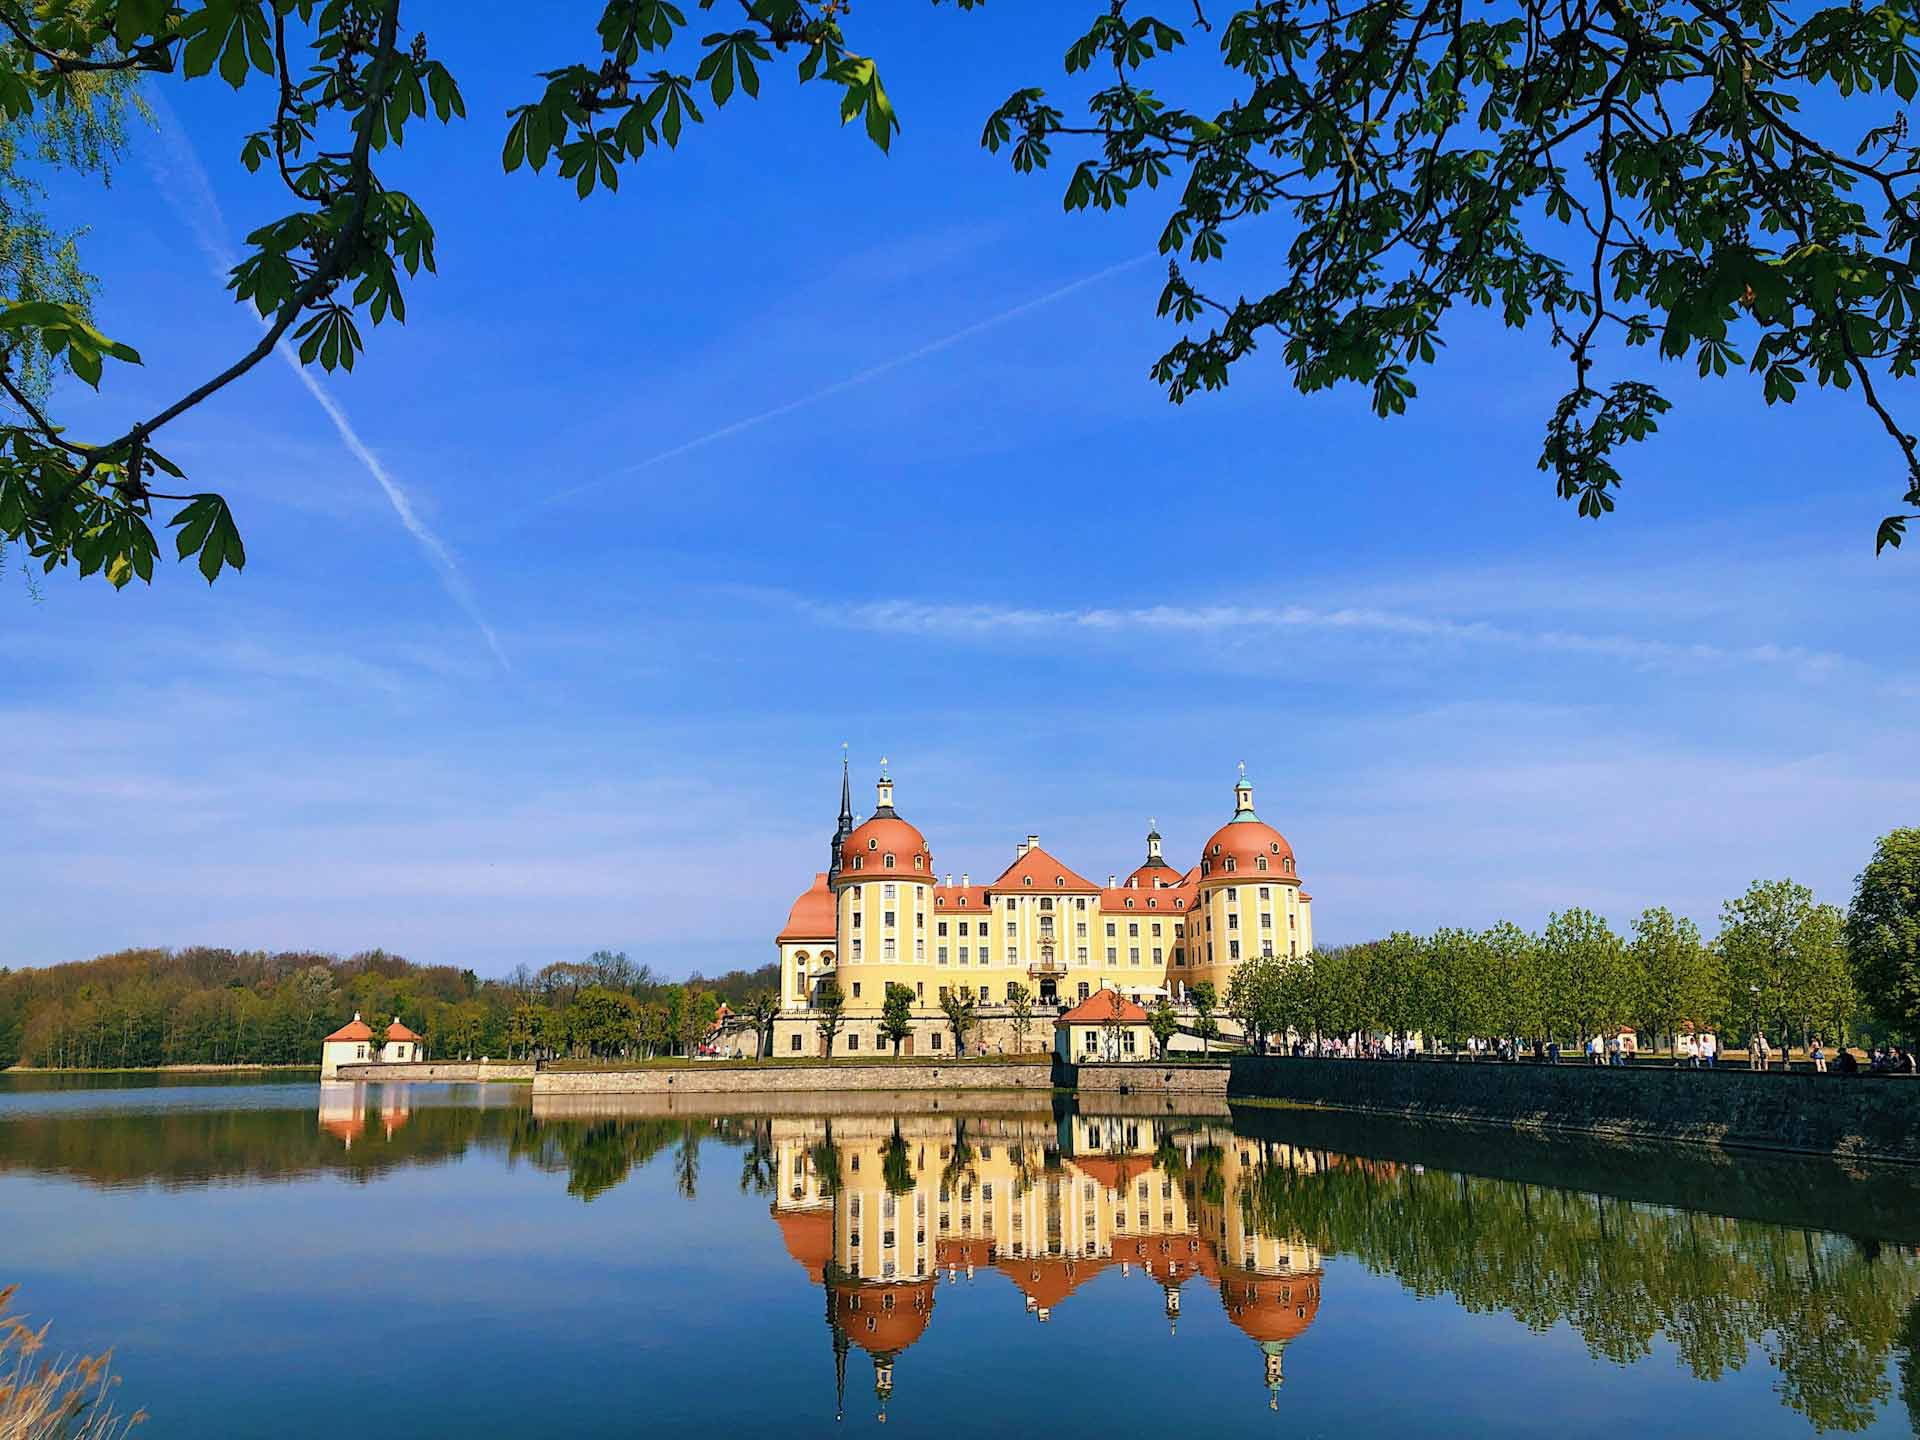 Schloss Moritzburg: Eine malerische Perle der Barockarchitektur, eingebettet in eine zauberhafte Landschaft aus Wäldern, Seen und sanften Hügeln.